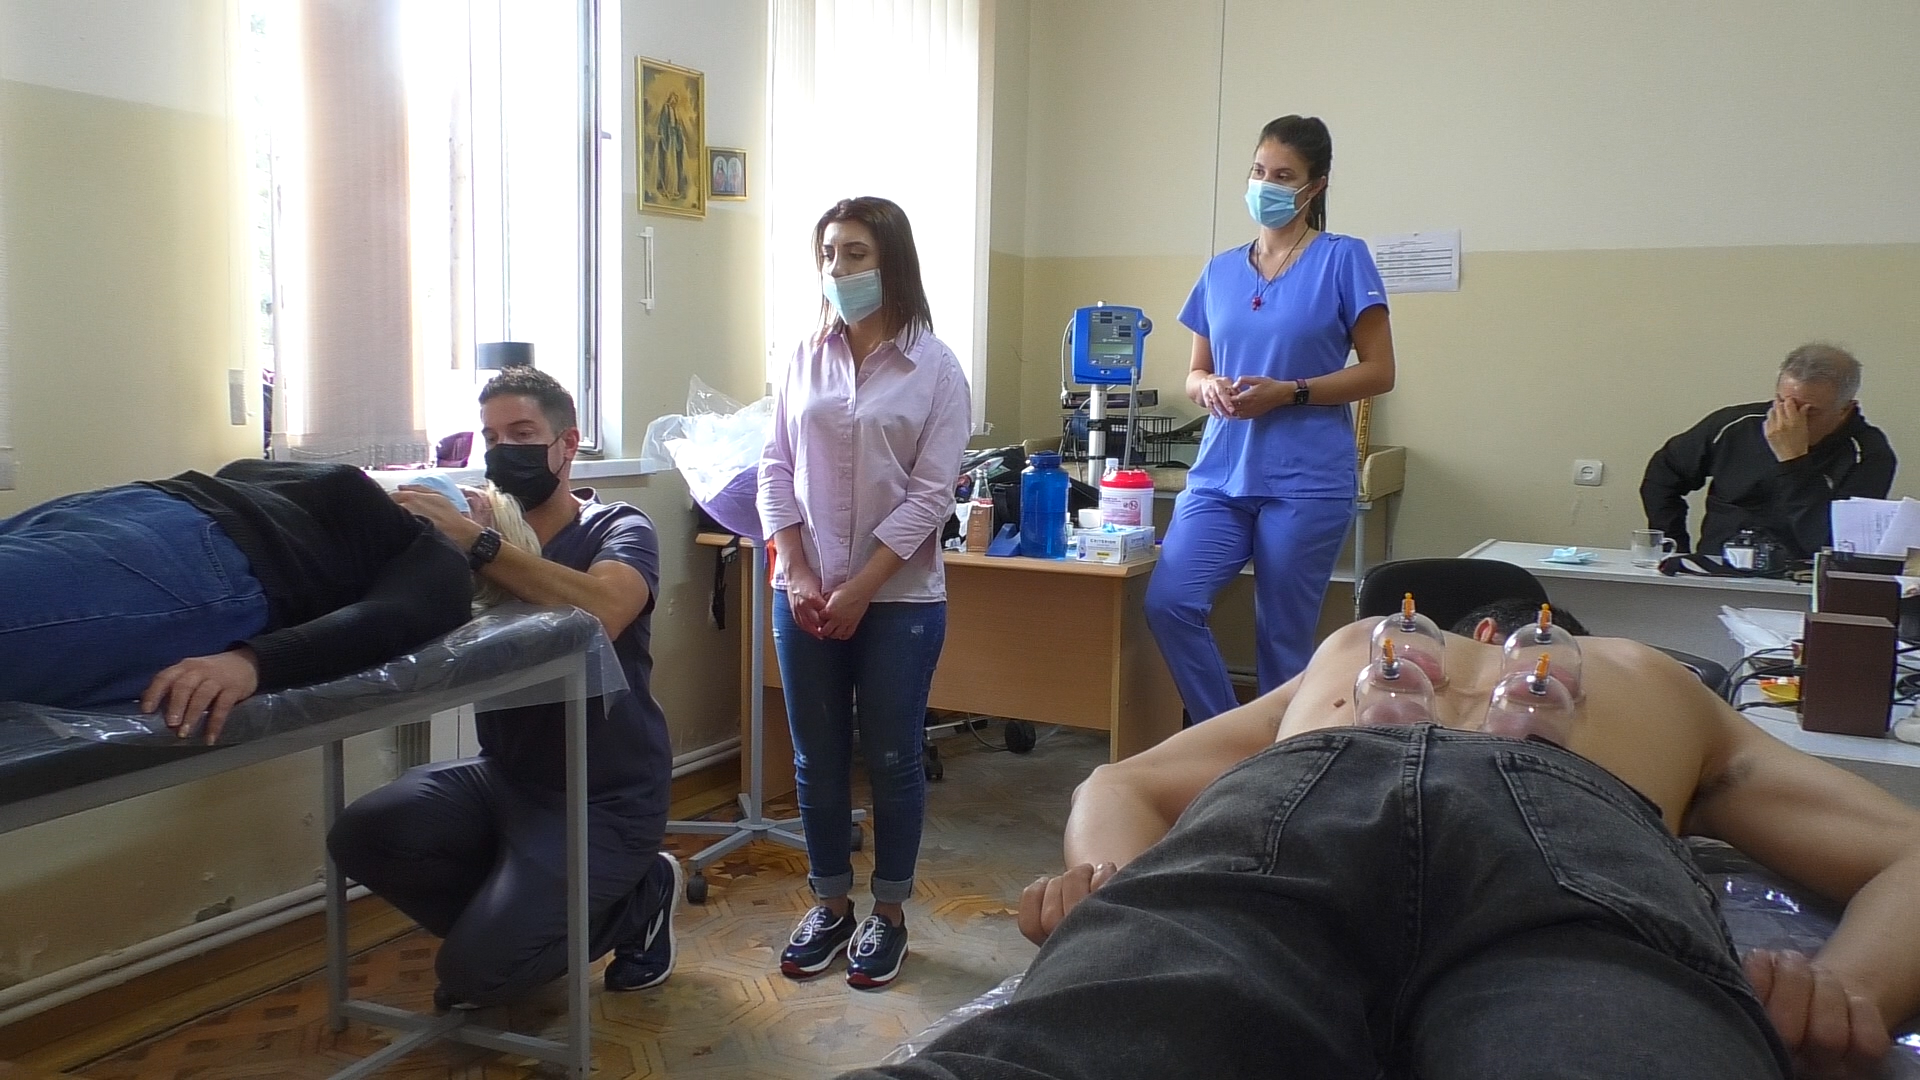 Ֆրեզնո քաղաքից բժիշկների խումբ է ժամանել Հայաստան․ Գյումրի են գործուղվել ֆիզիոթերապևտներ և նյարդաբաններ